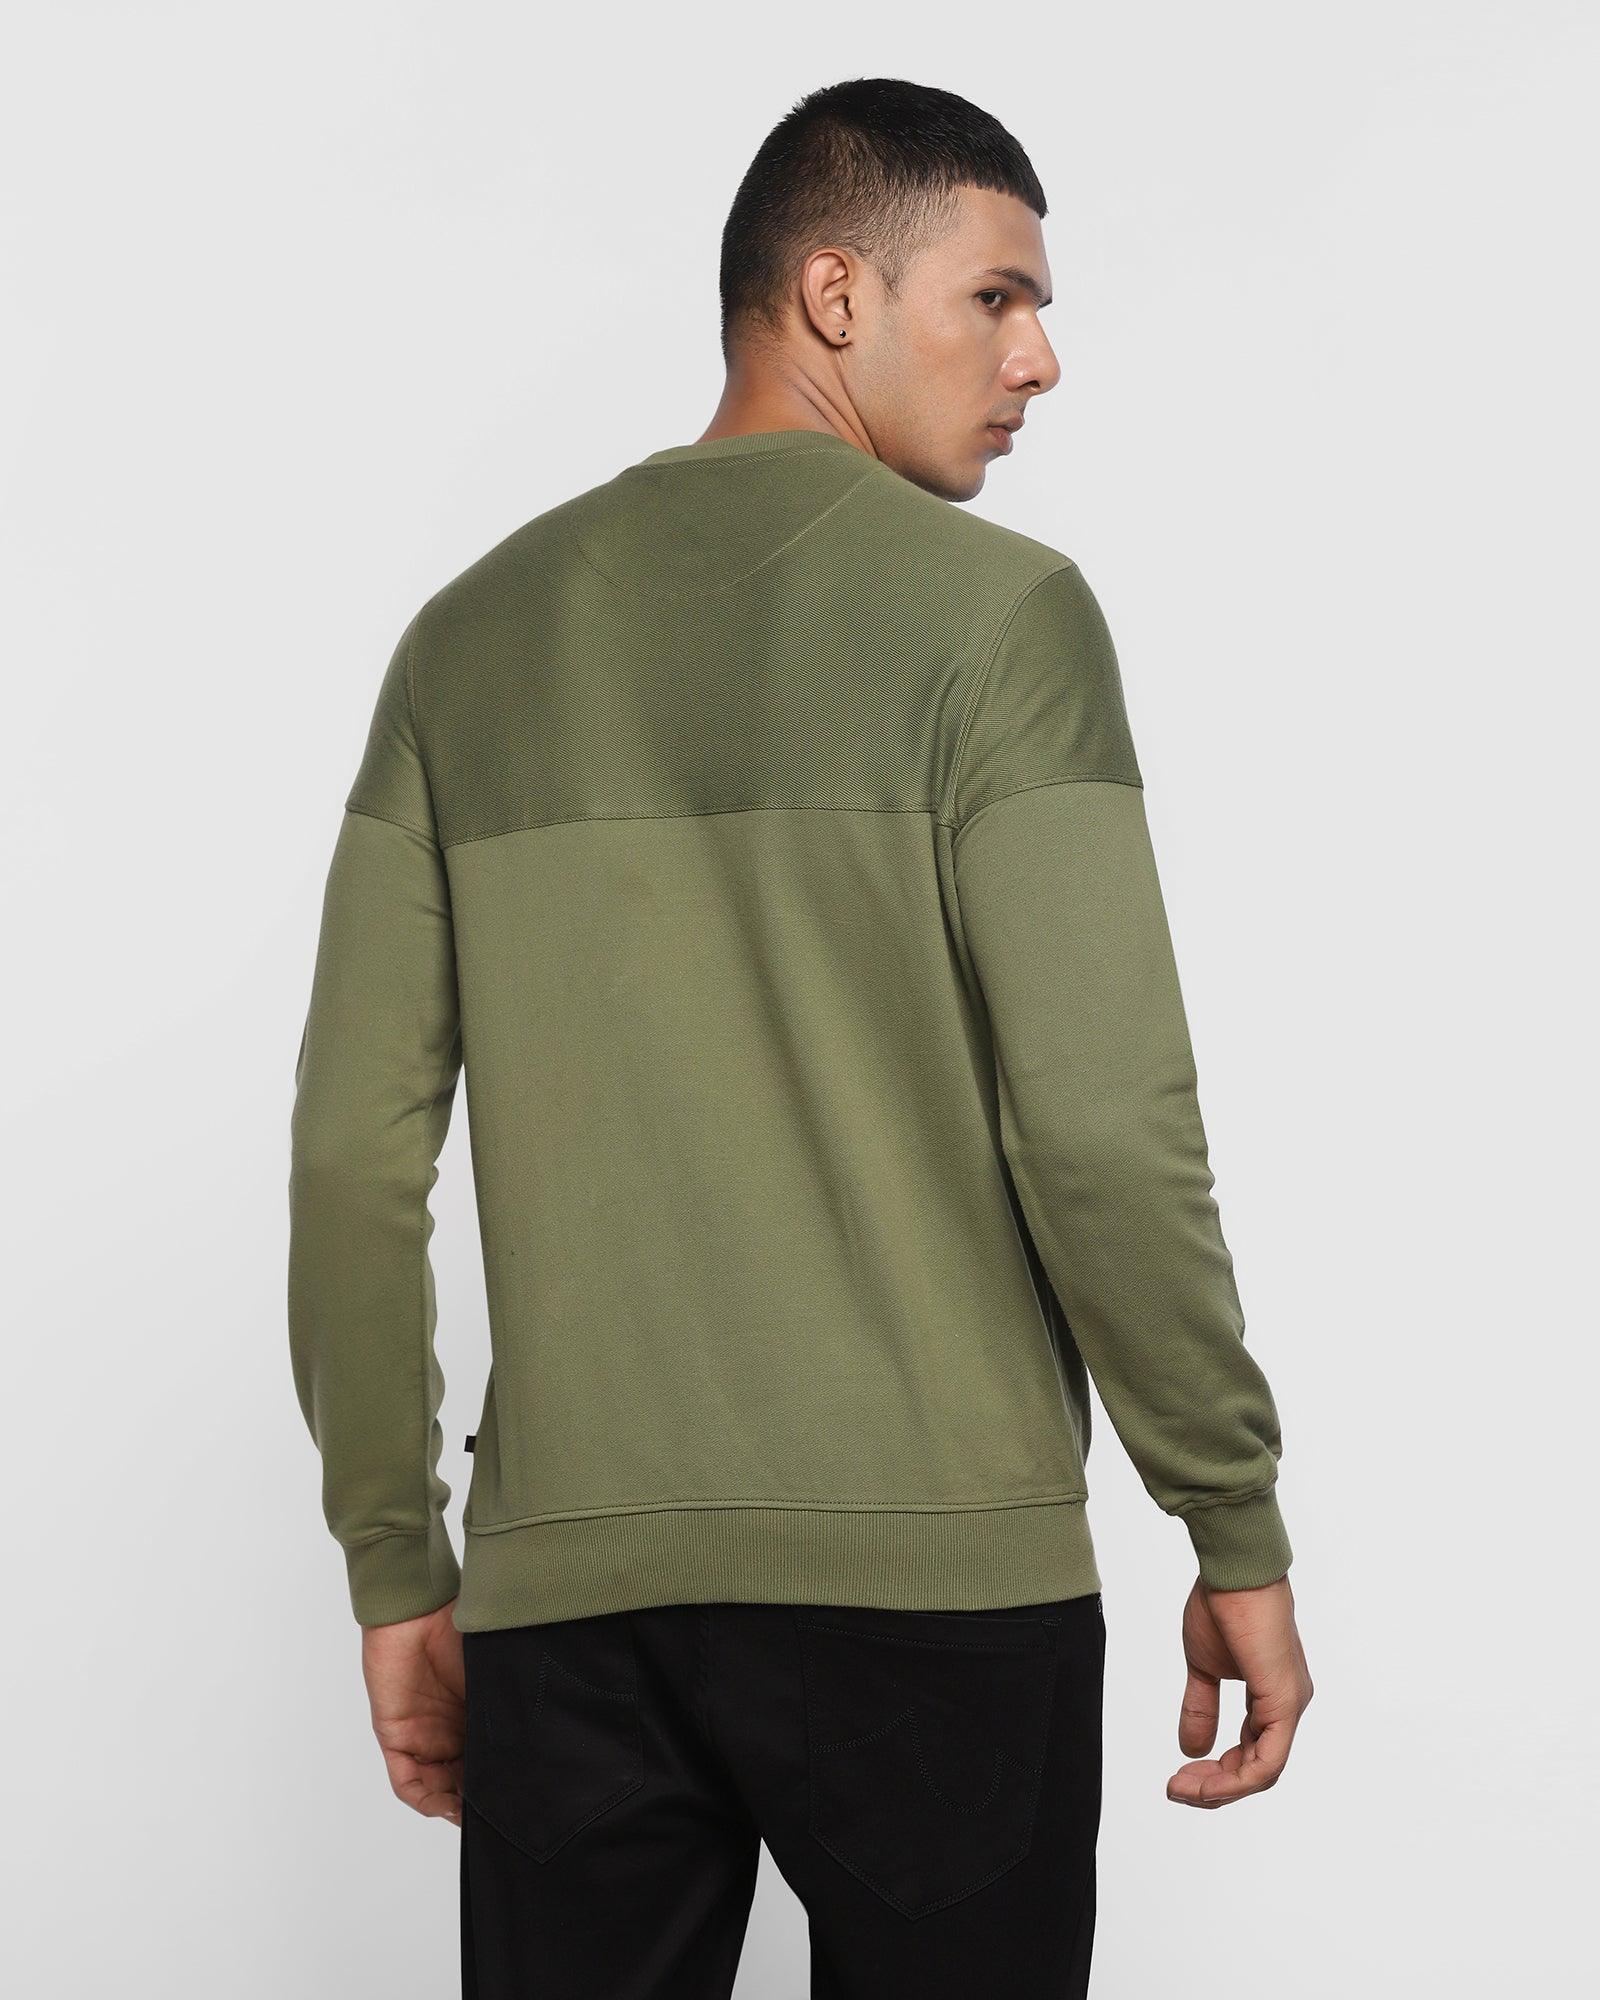 Crew Neck Moss Green Solid Sweatshirt - Andrew